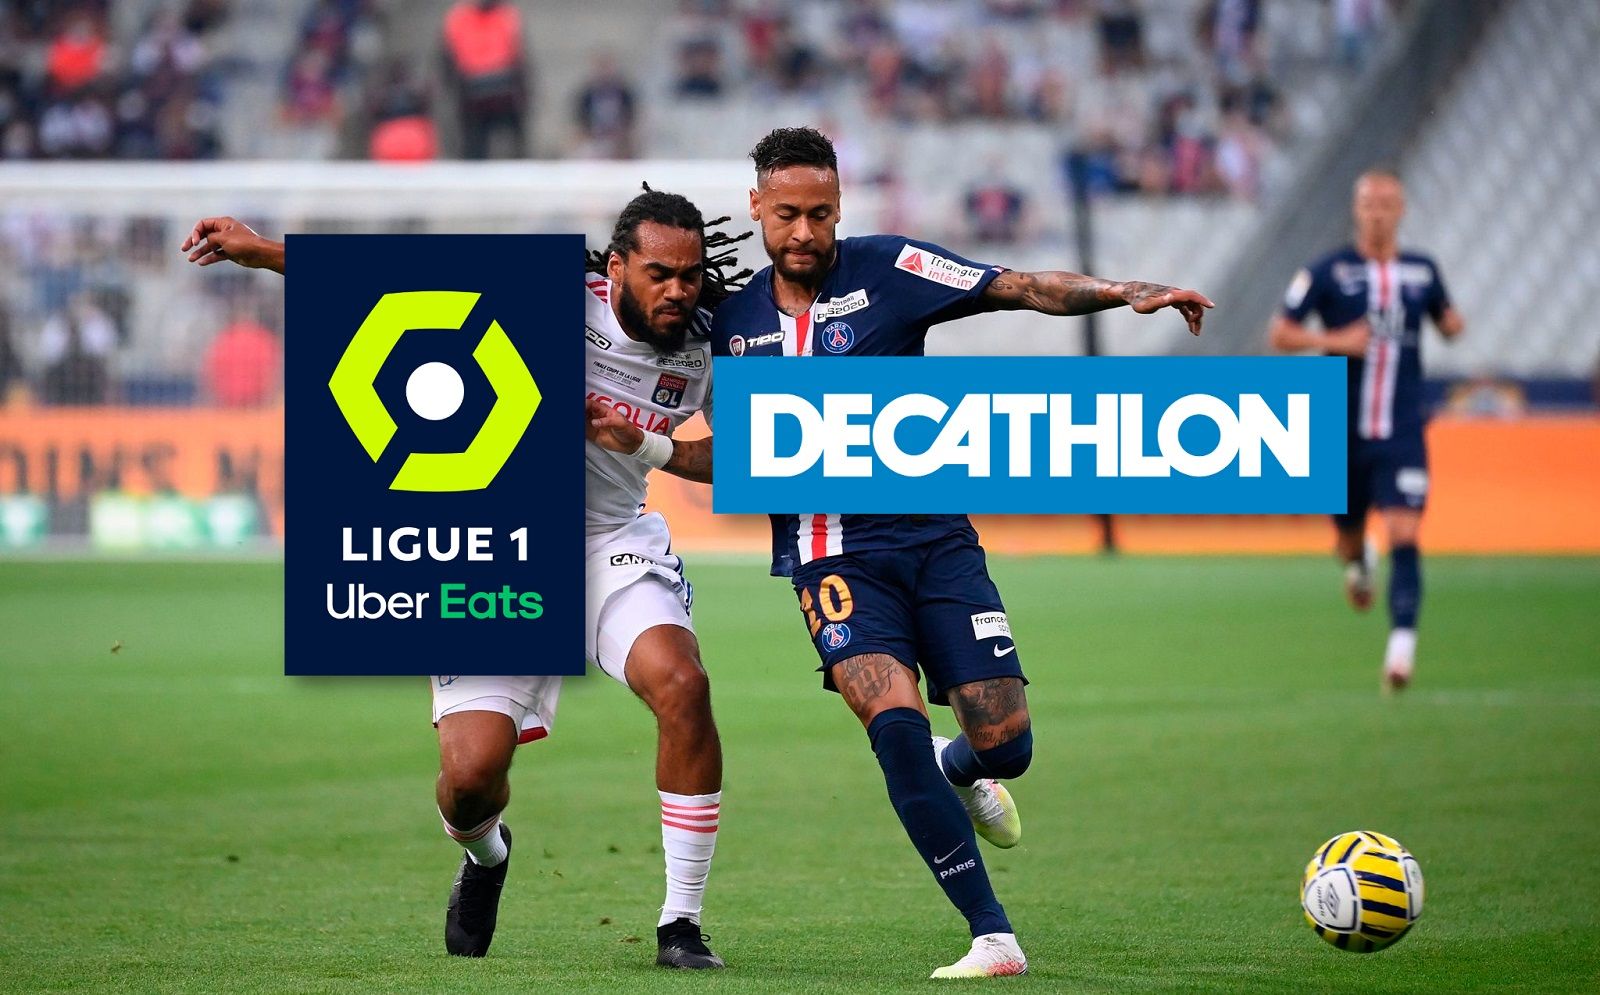 Ballon Officiel Ligue 1 Uber Eats